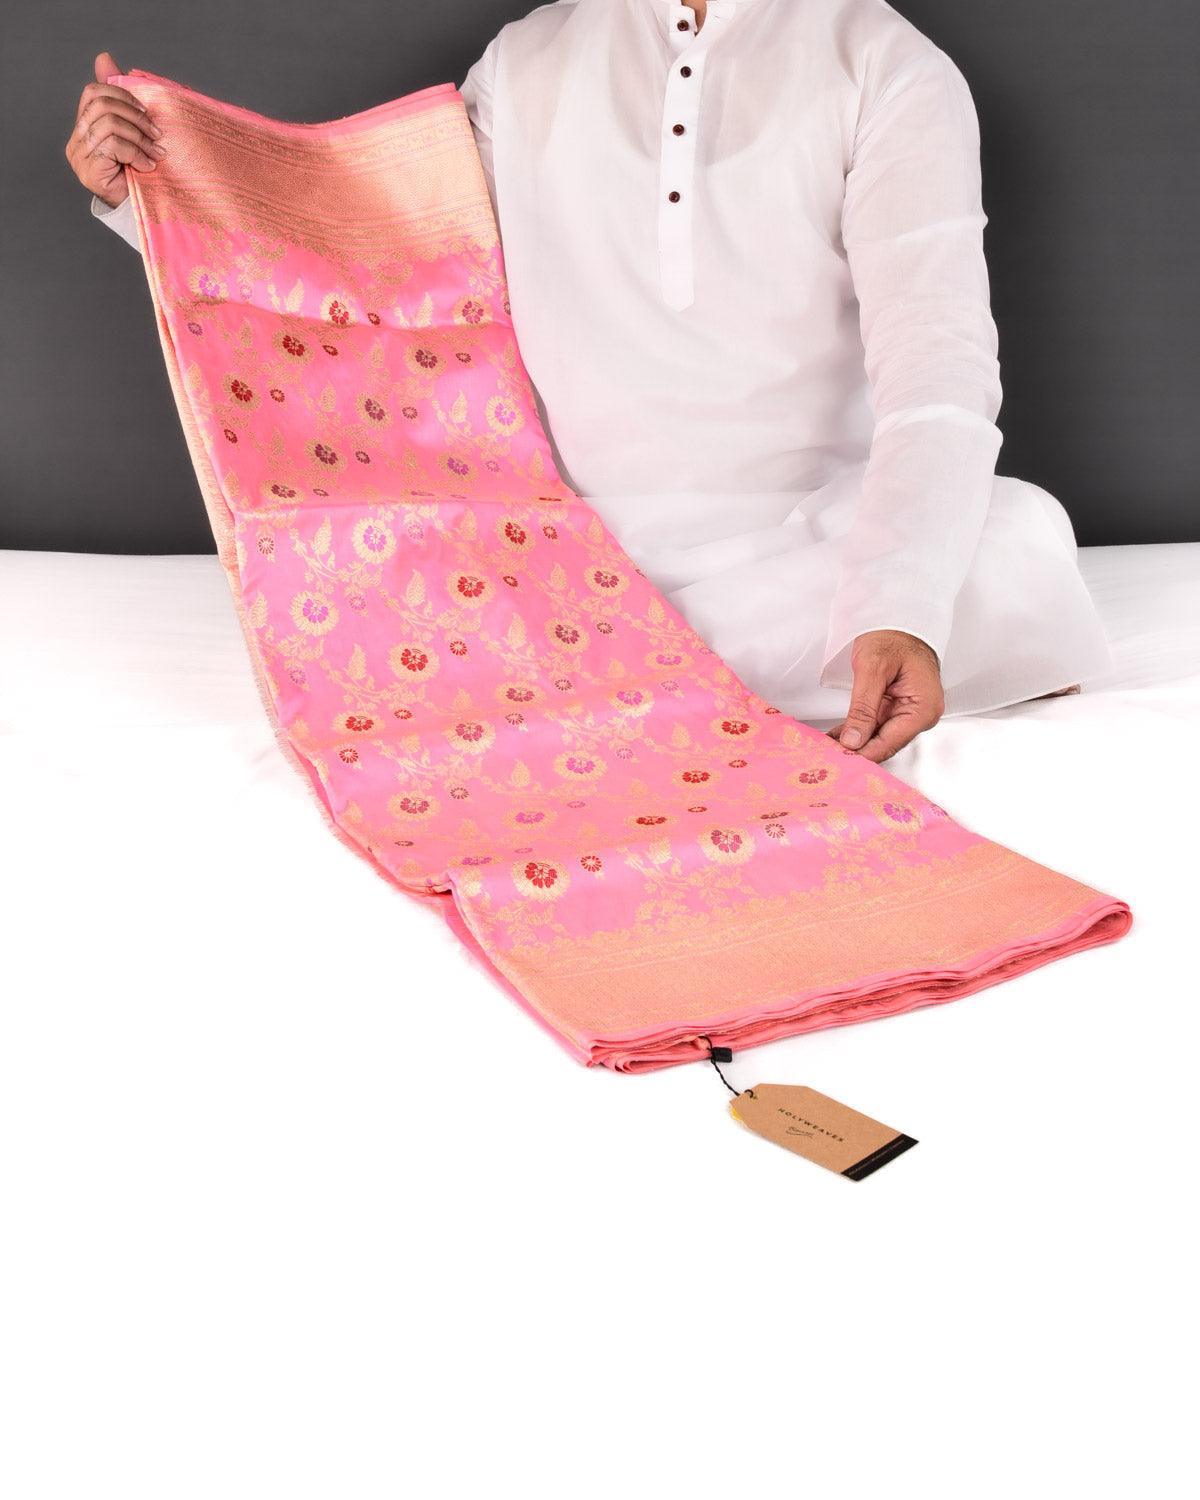 Flamingo Pink Banarasi Gold Zari with Meenekari Kadhuan Jaal Handwoven Katan Silk Saree - By HolyWeaves, Benares